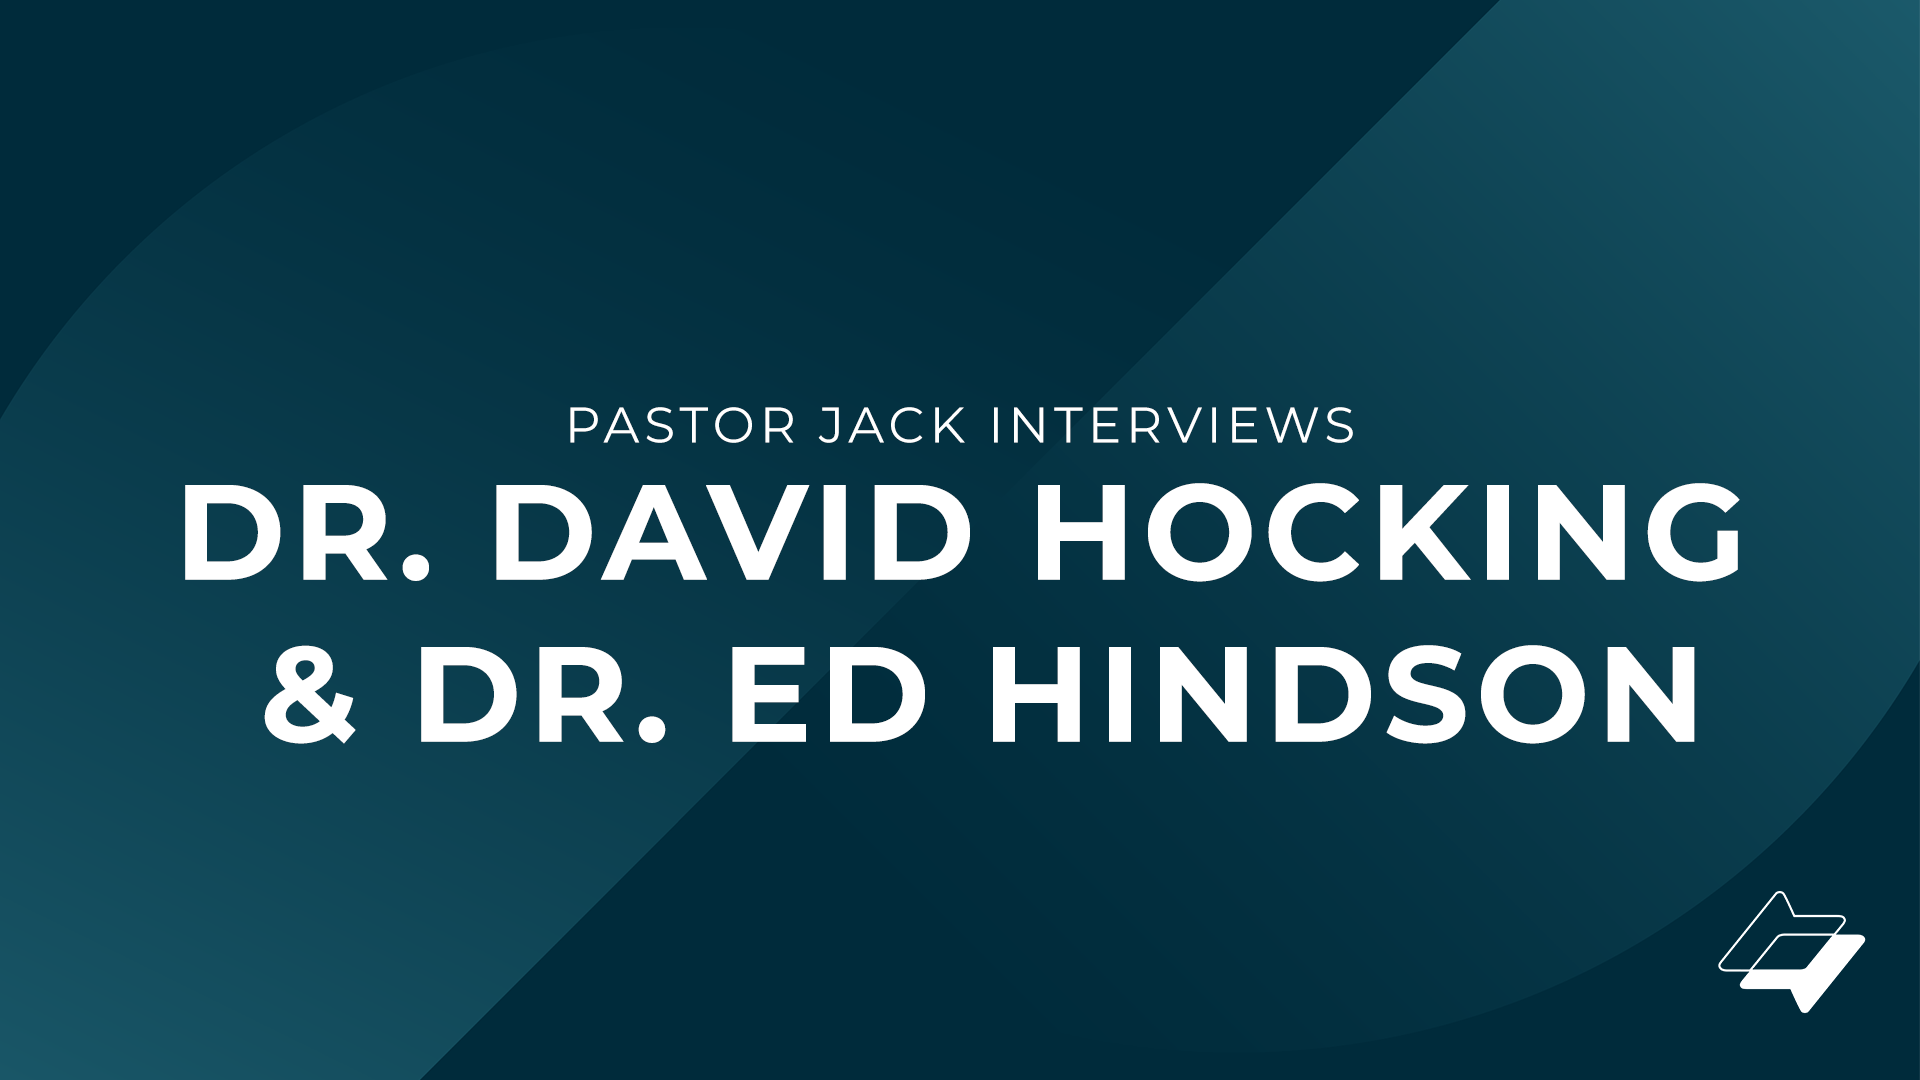 Pastor Jack interviews Dr. David Hocking & Dr. Ed Hindson